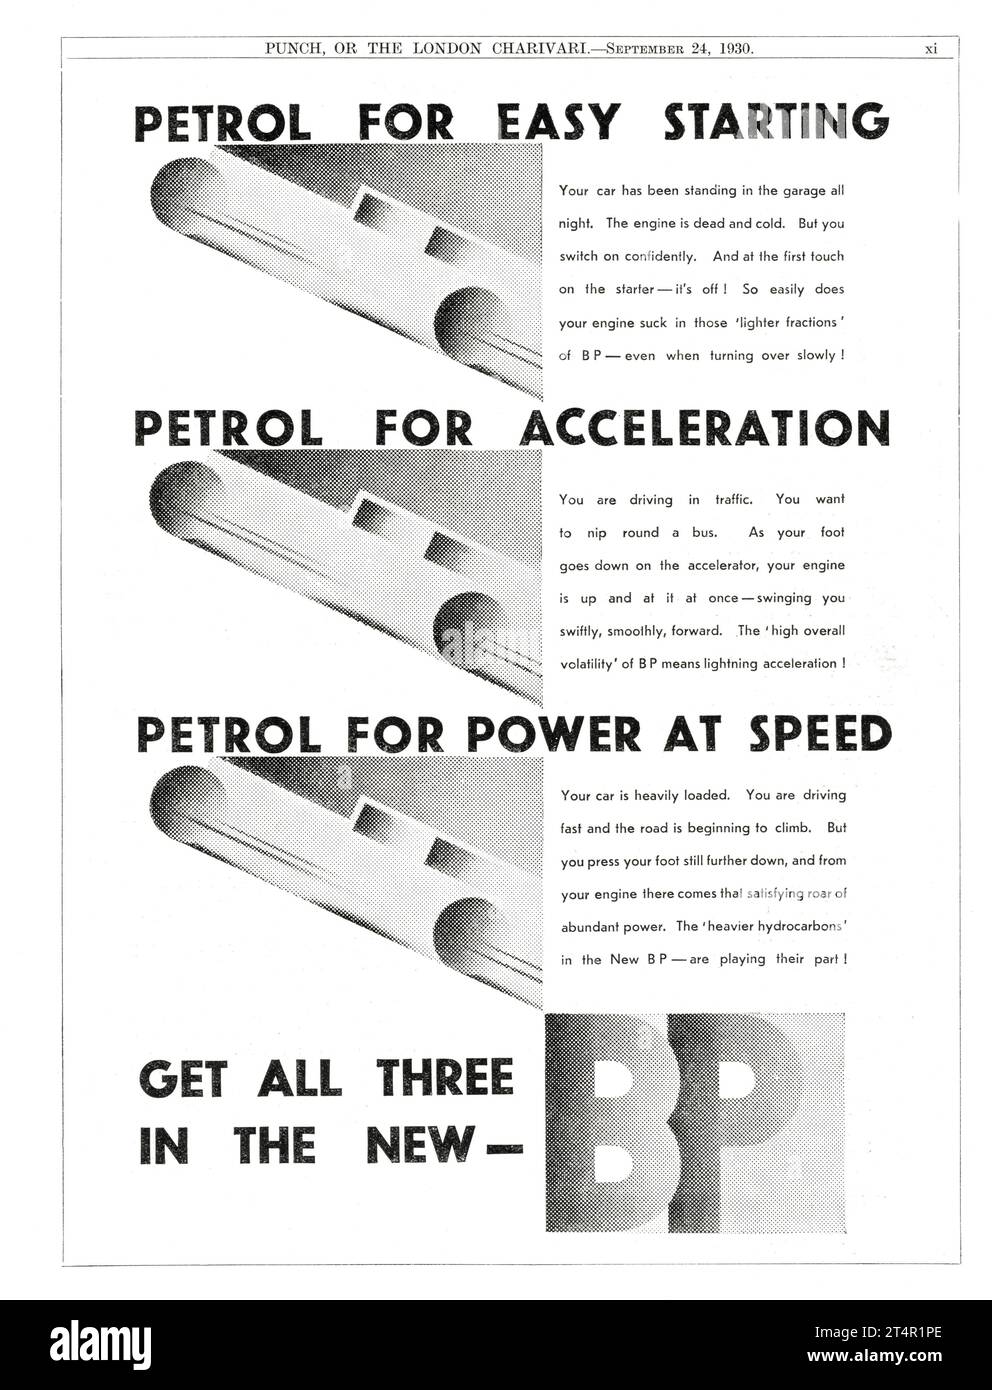 The New BP PETROL 1930 British Magazine Advertisement Stock Photo